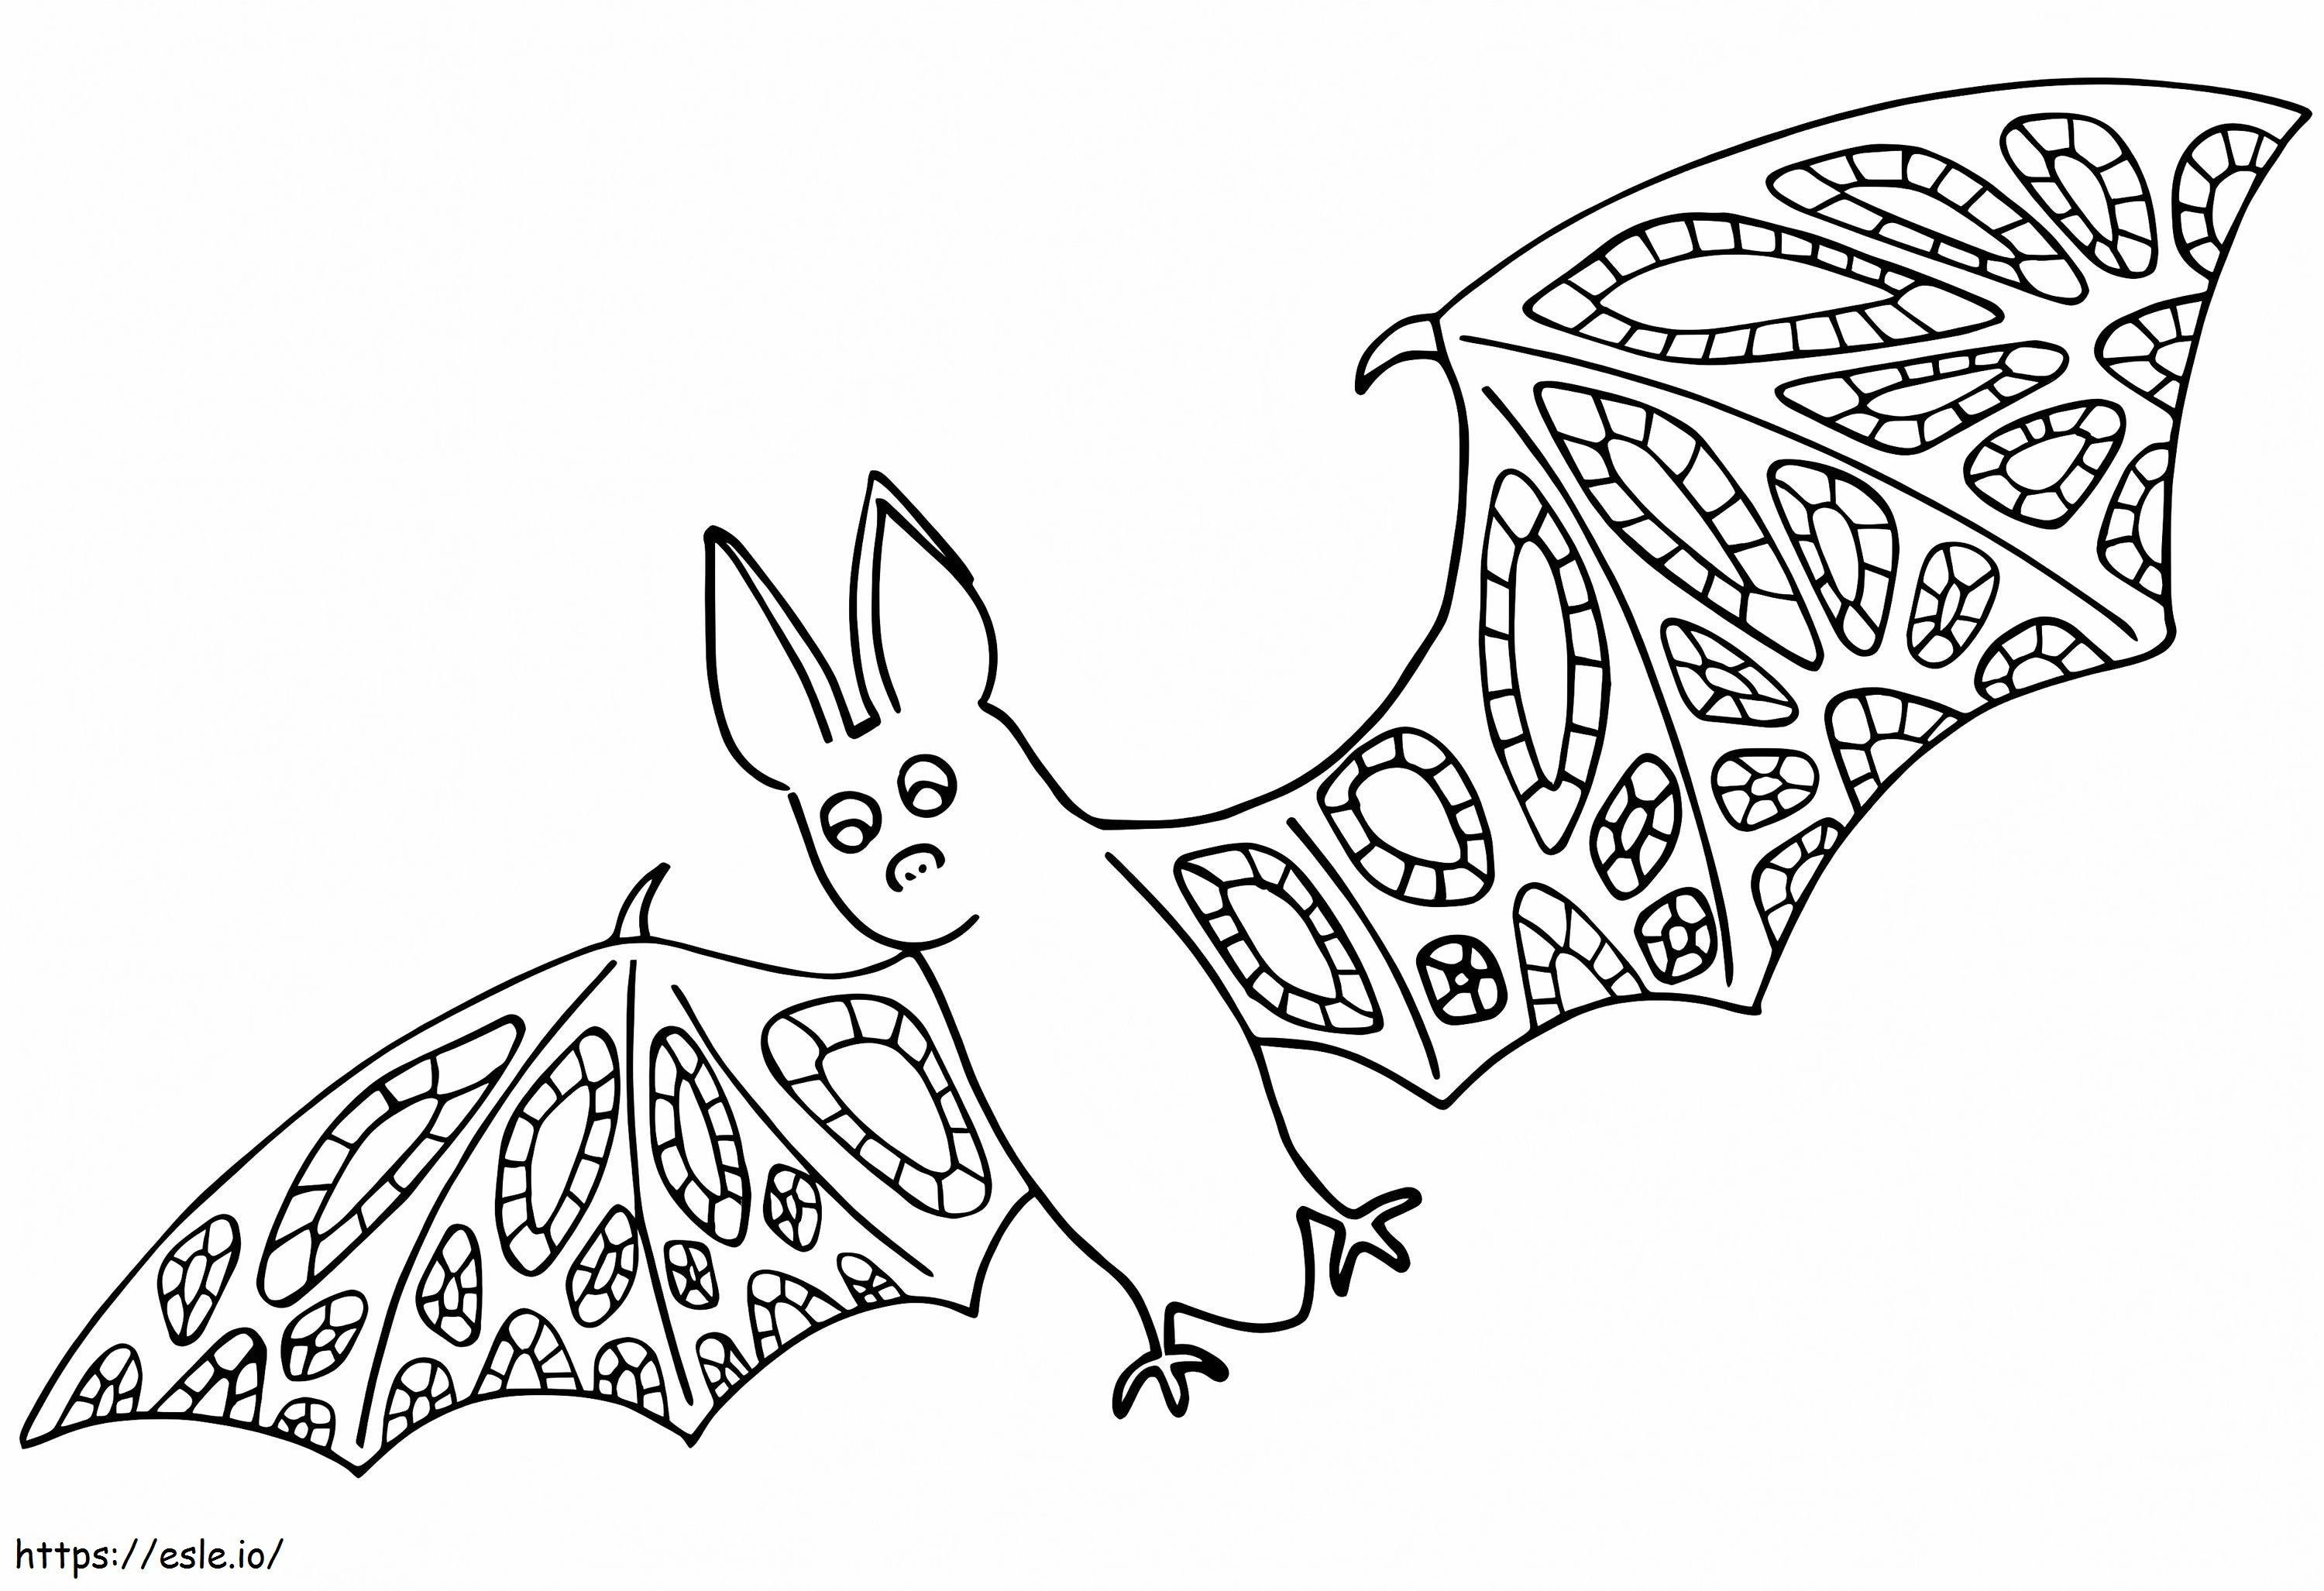 Bat Alebrijes ausmalbilder